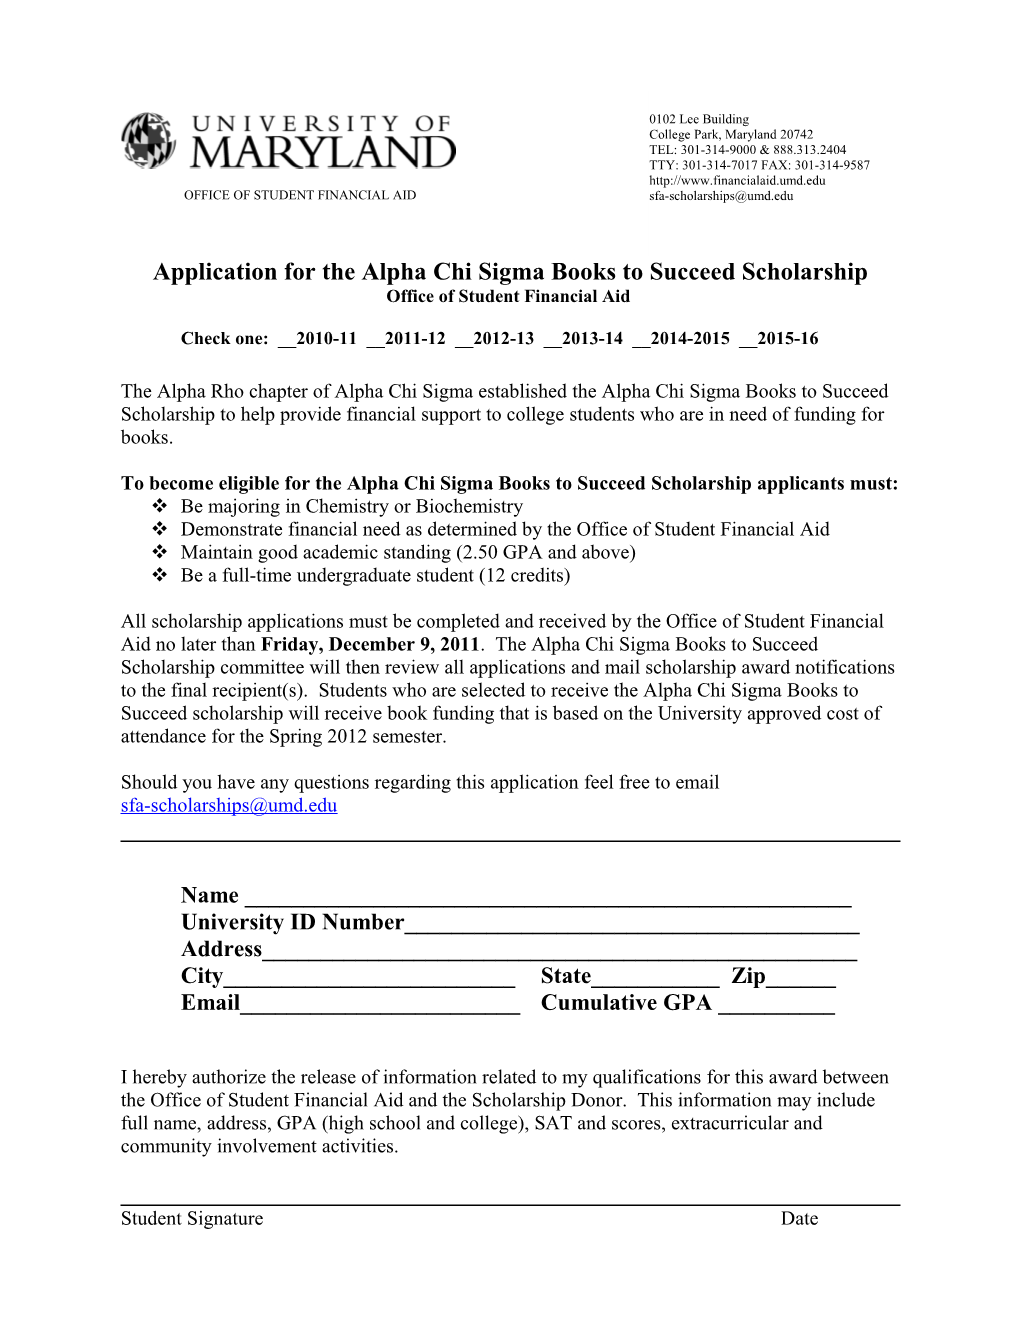 Application for the Mary Ann Granger-Alderson Memorial Scholarship